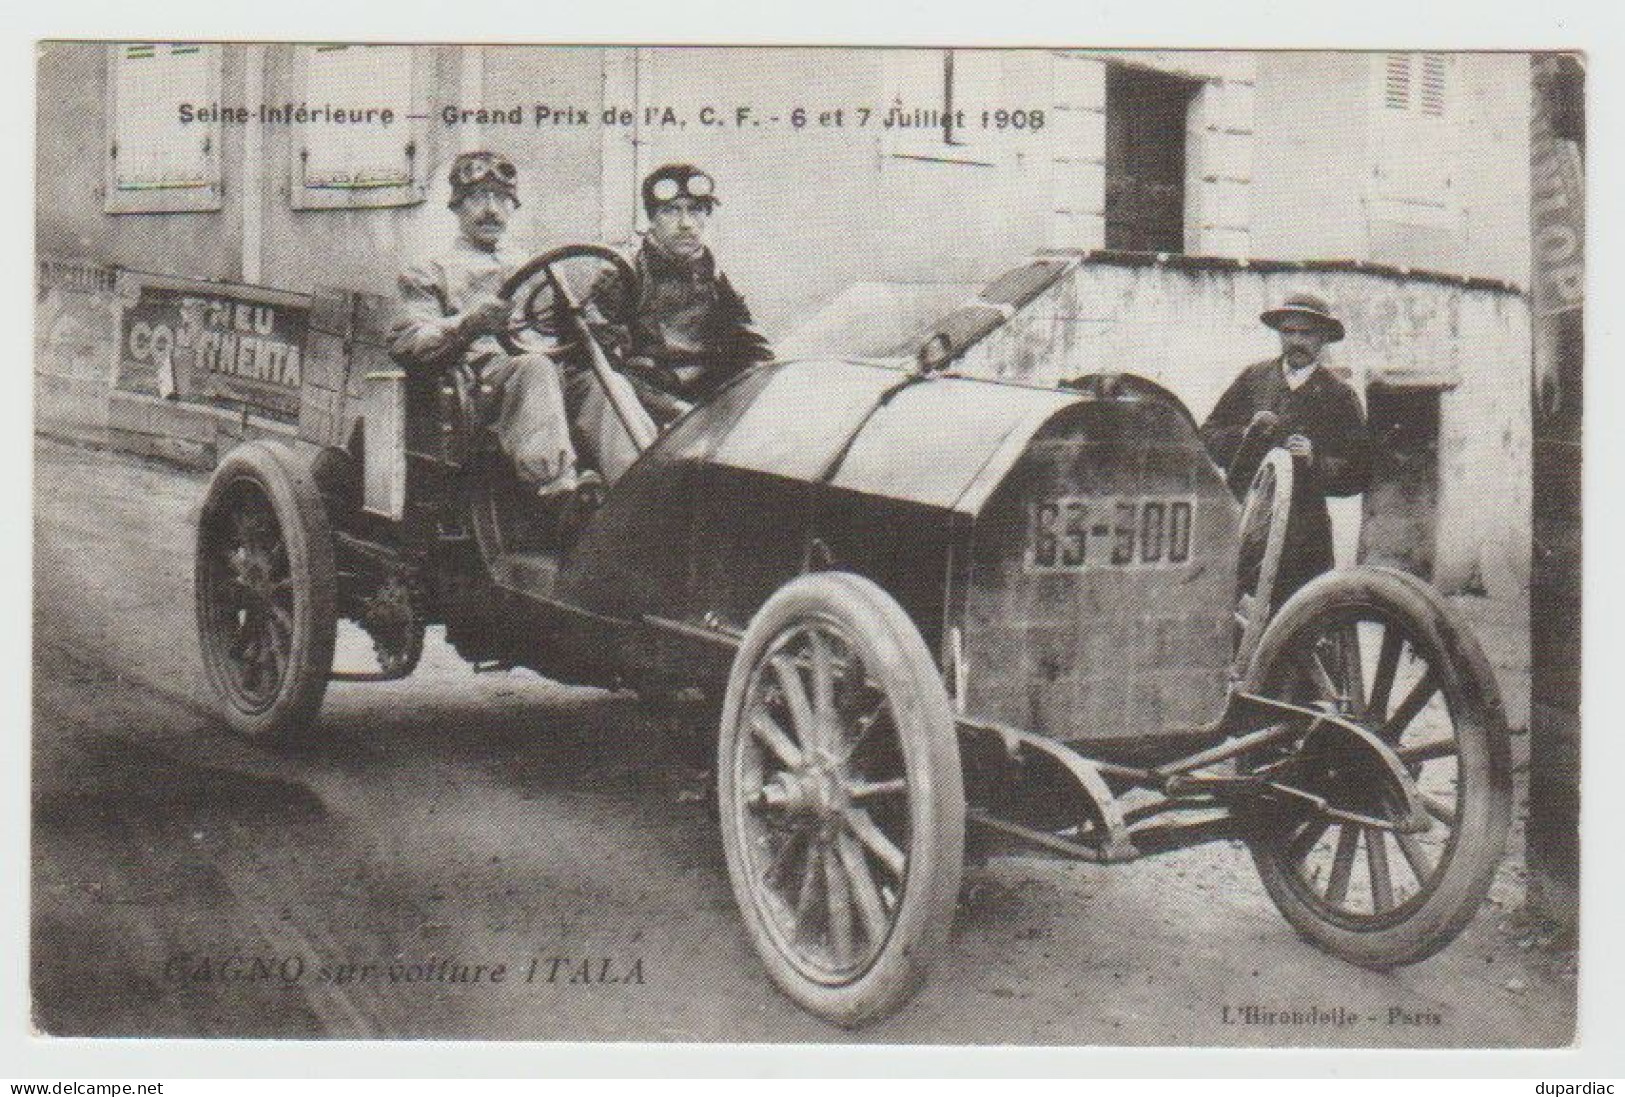 Sport Automobile / Seine Inférieure -- Grand Prix De L'A.C.F. - 6 Et 7 Juillet 1908. GAGNO Sur Voiture ITALA. - Rallyes